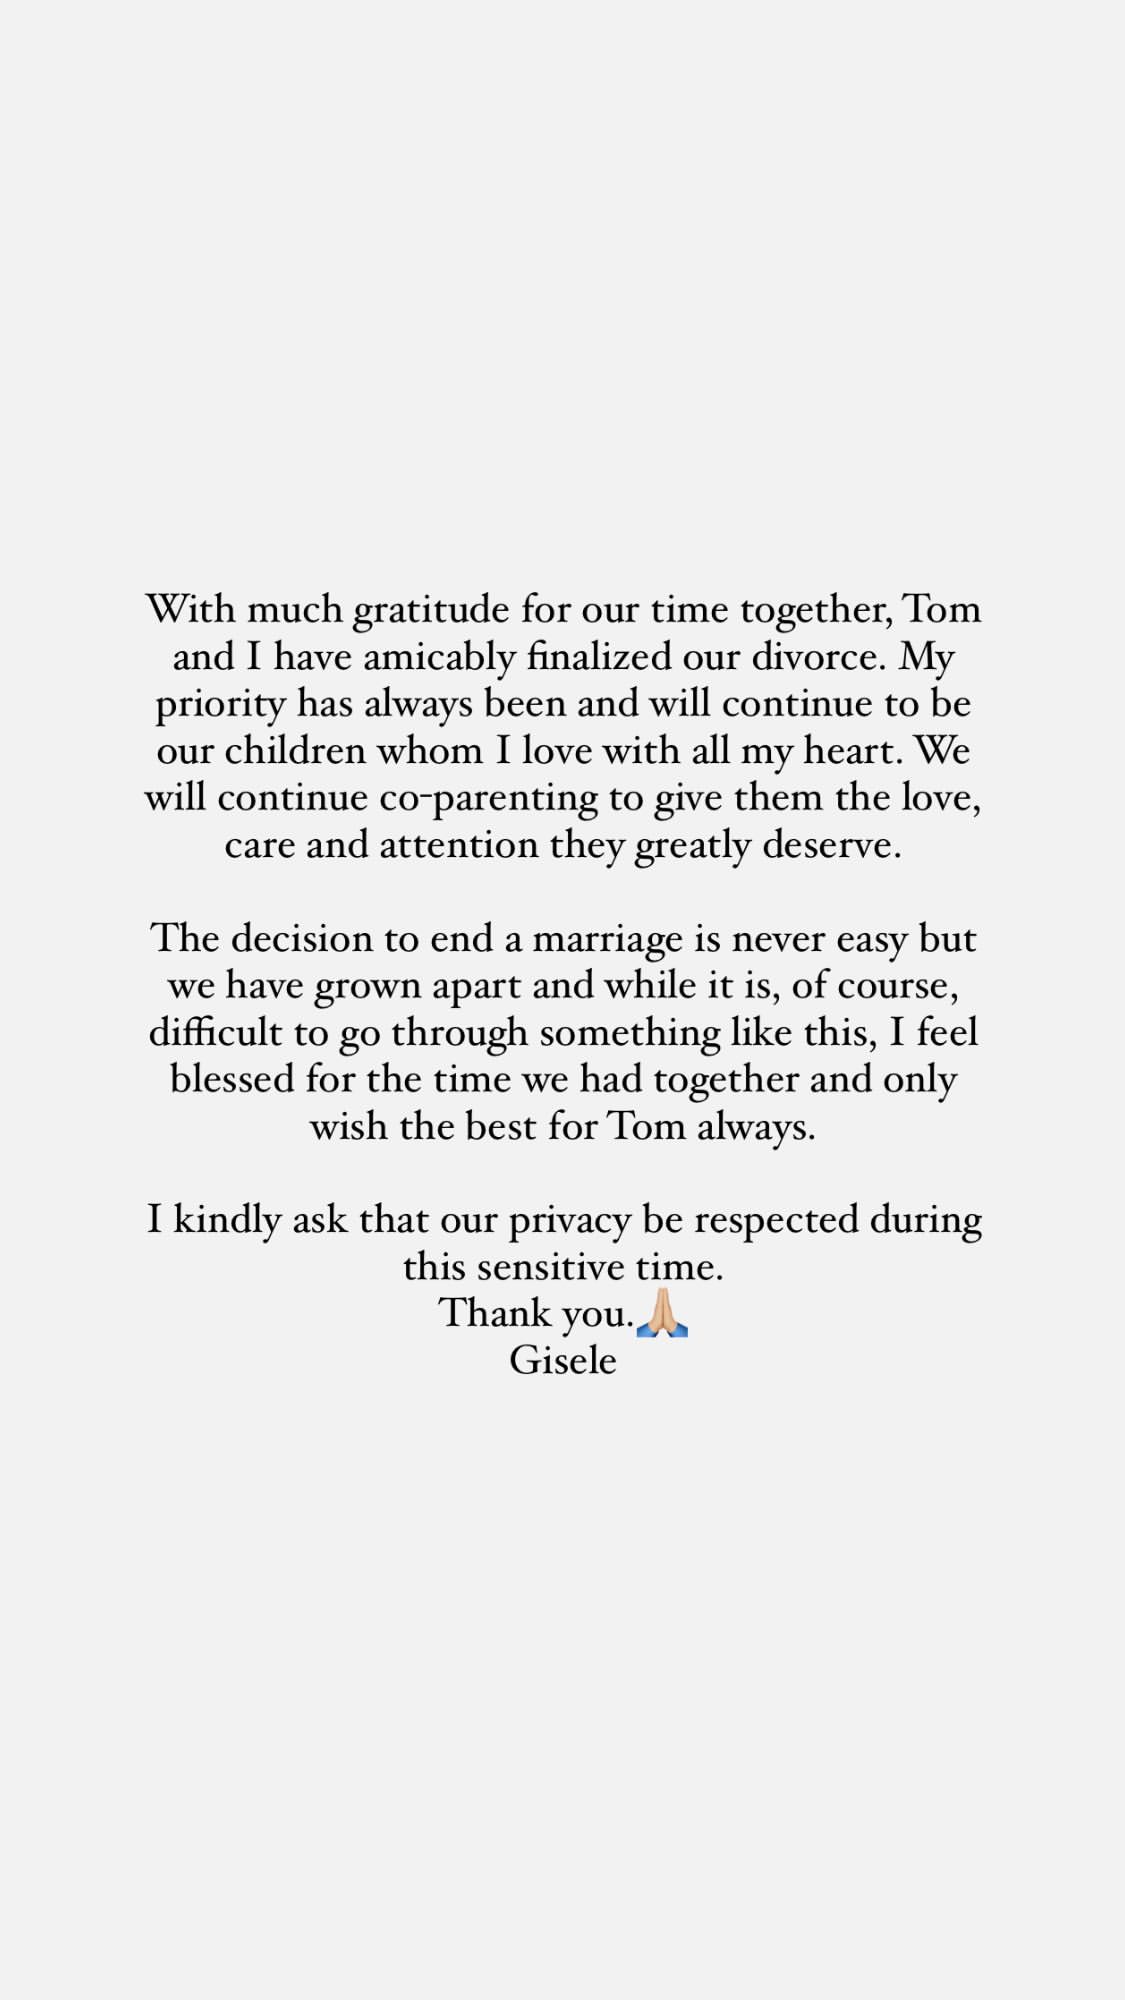 Gisele Bündchen's statement on divorce from Tom Brady.